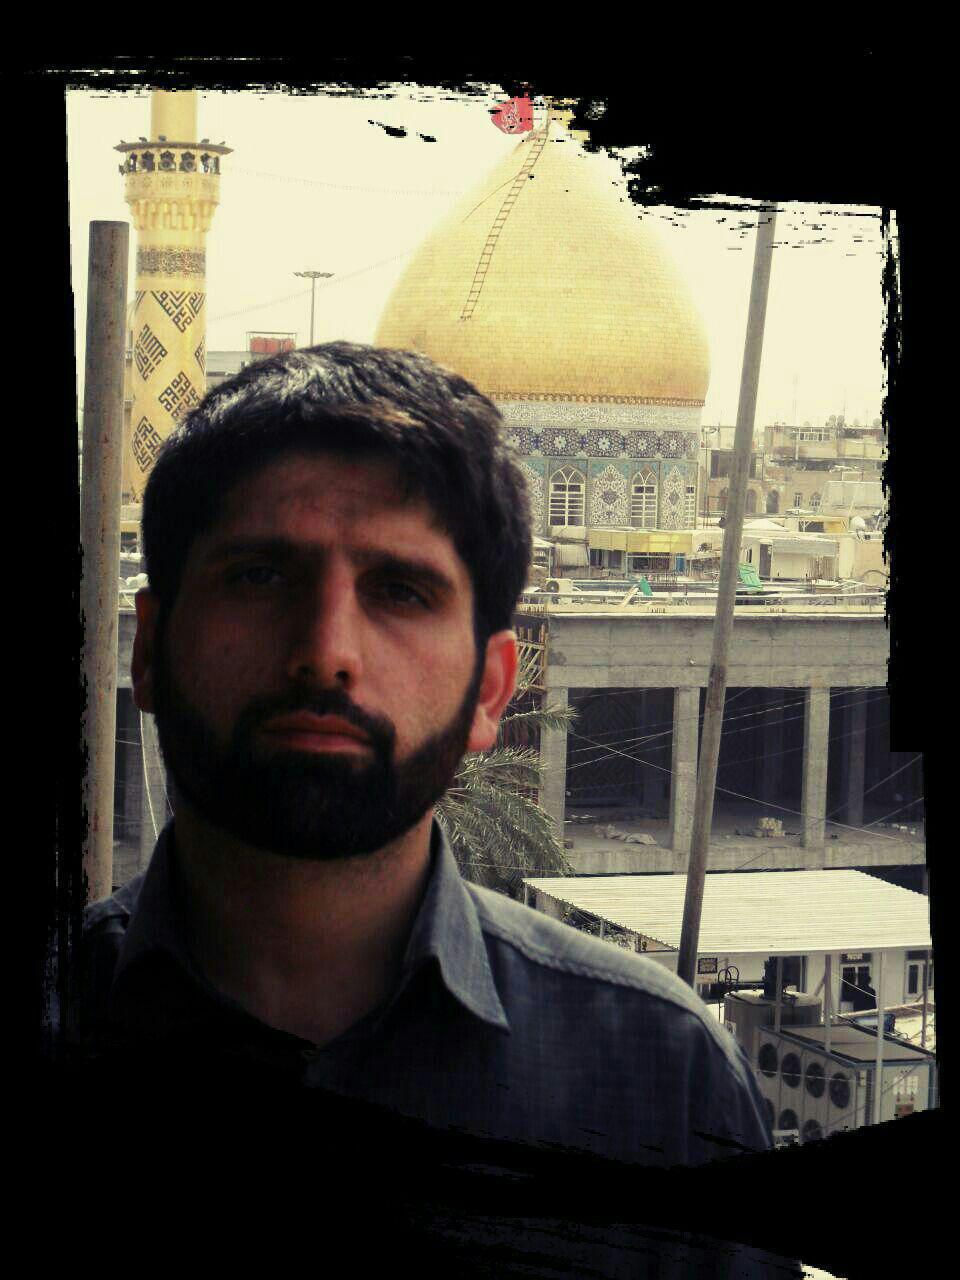 شهادت یکی دیگر از بسیجیان مدافع حرم کرج + تصاویر